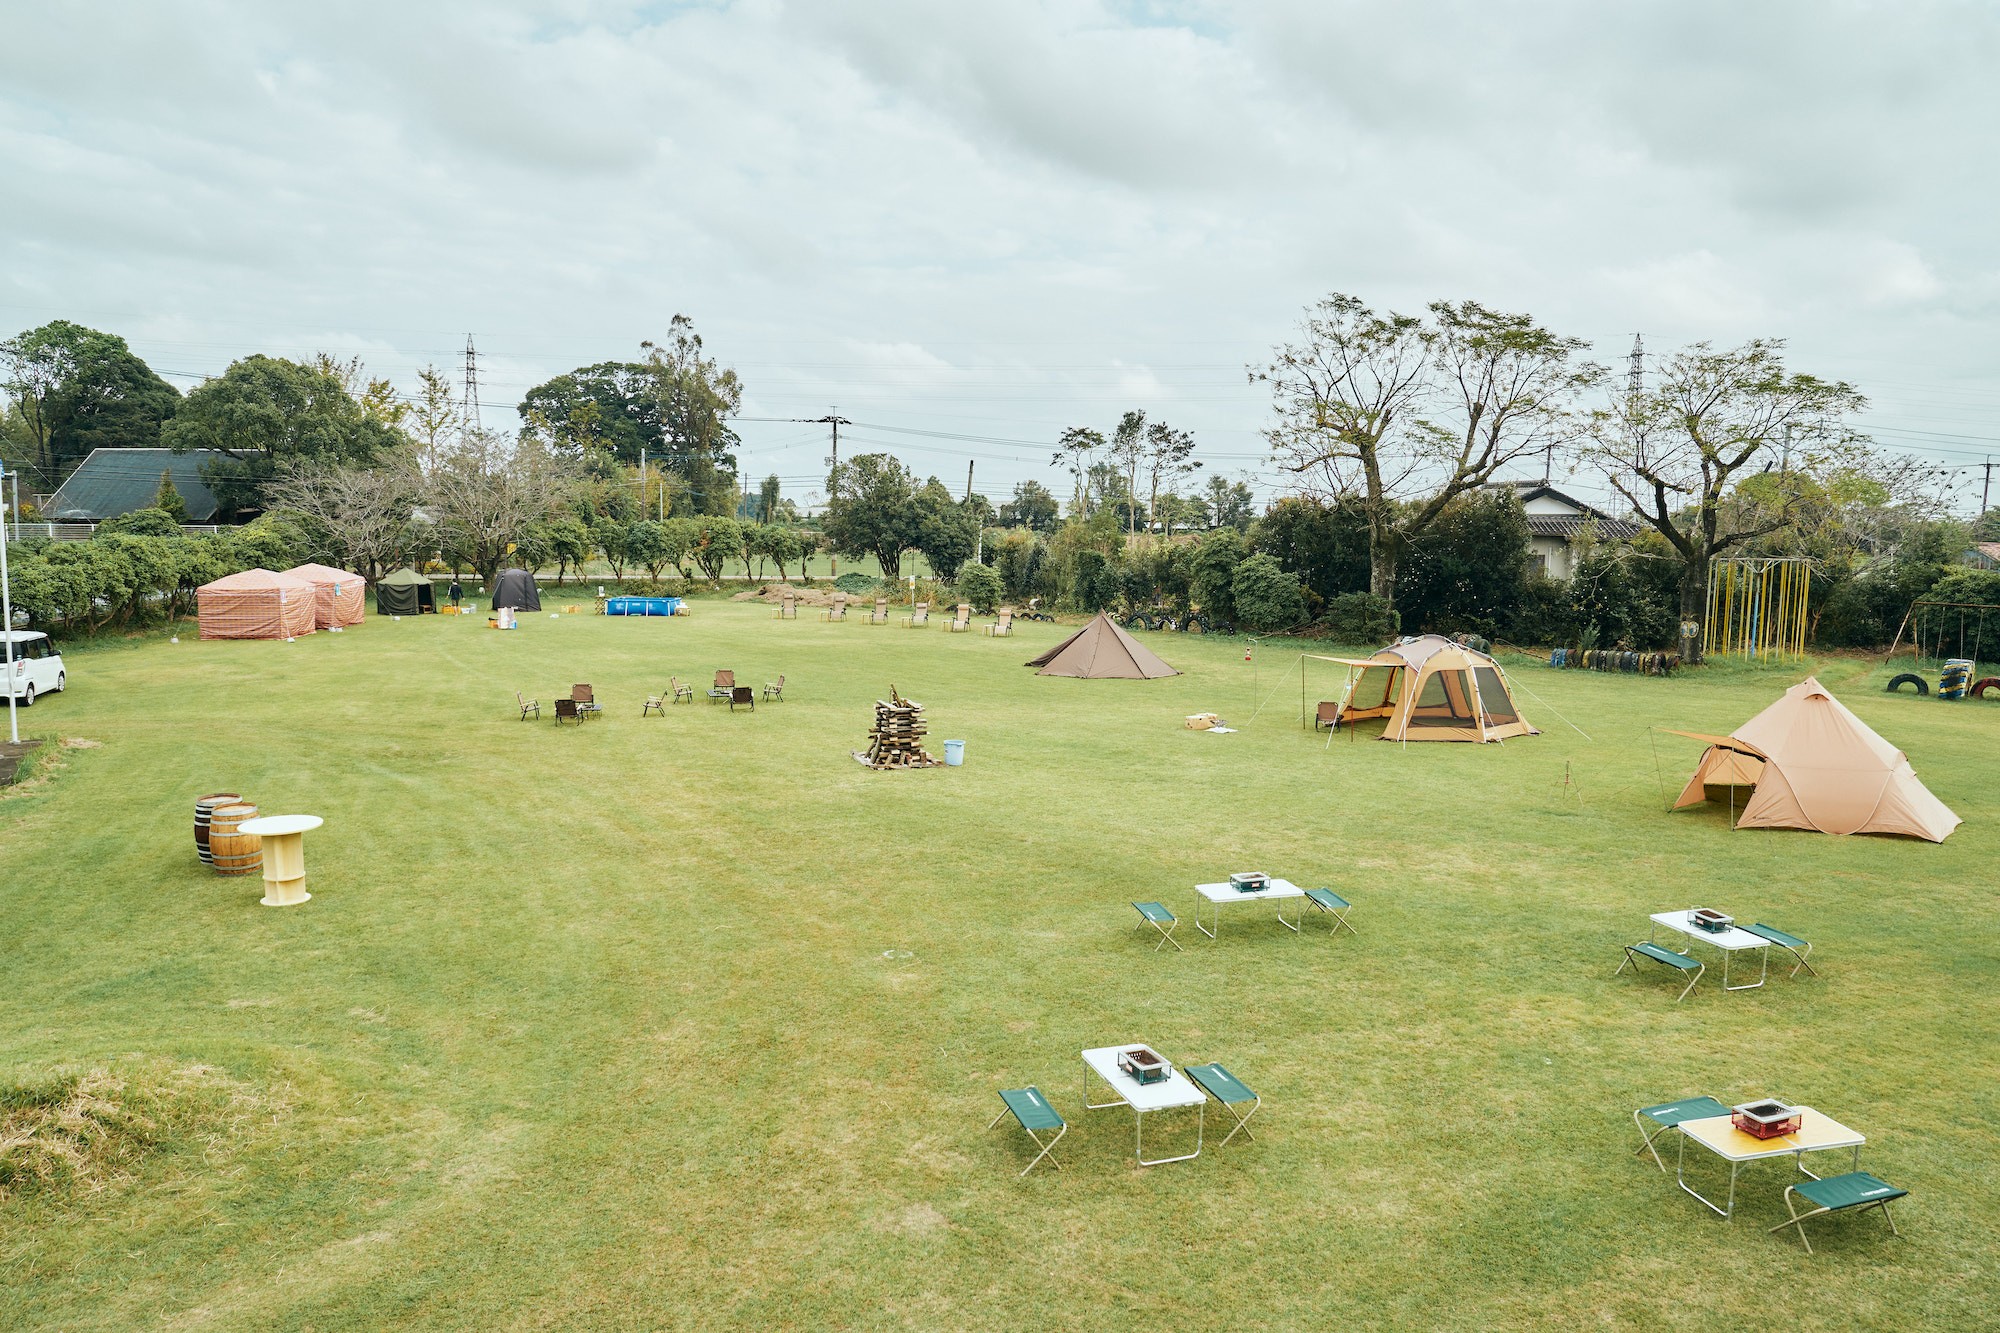 アウトドアビギナーにぴったり 宮崎県新富町の廃校でフリーサイトのテント泊を楽しめる サウナありキャンプイベントを地域おこし協力隊が初開催 Sdgs Online